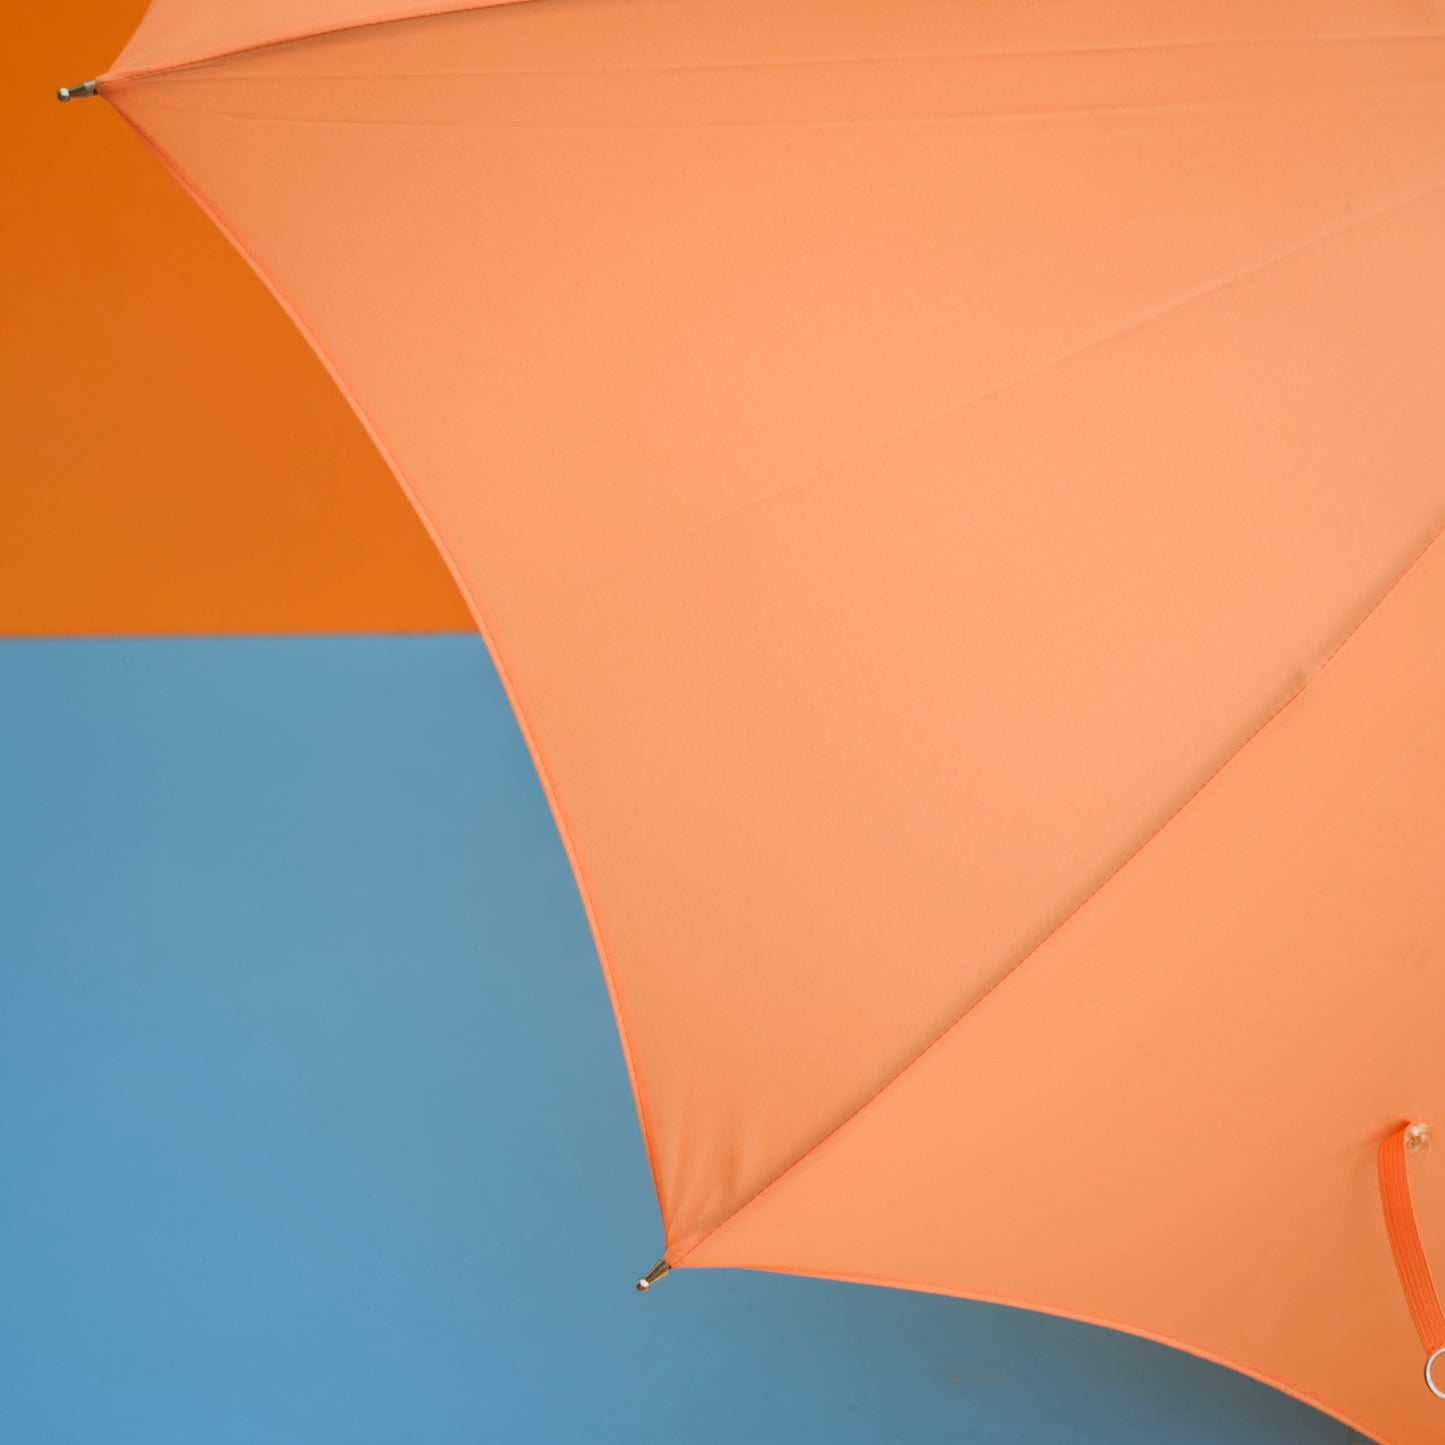 Vintage 1960s Umbrella / Parasol - Orange